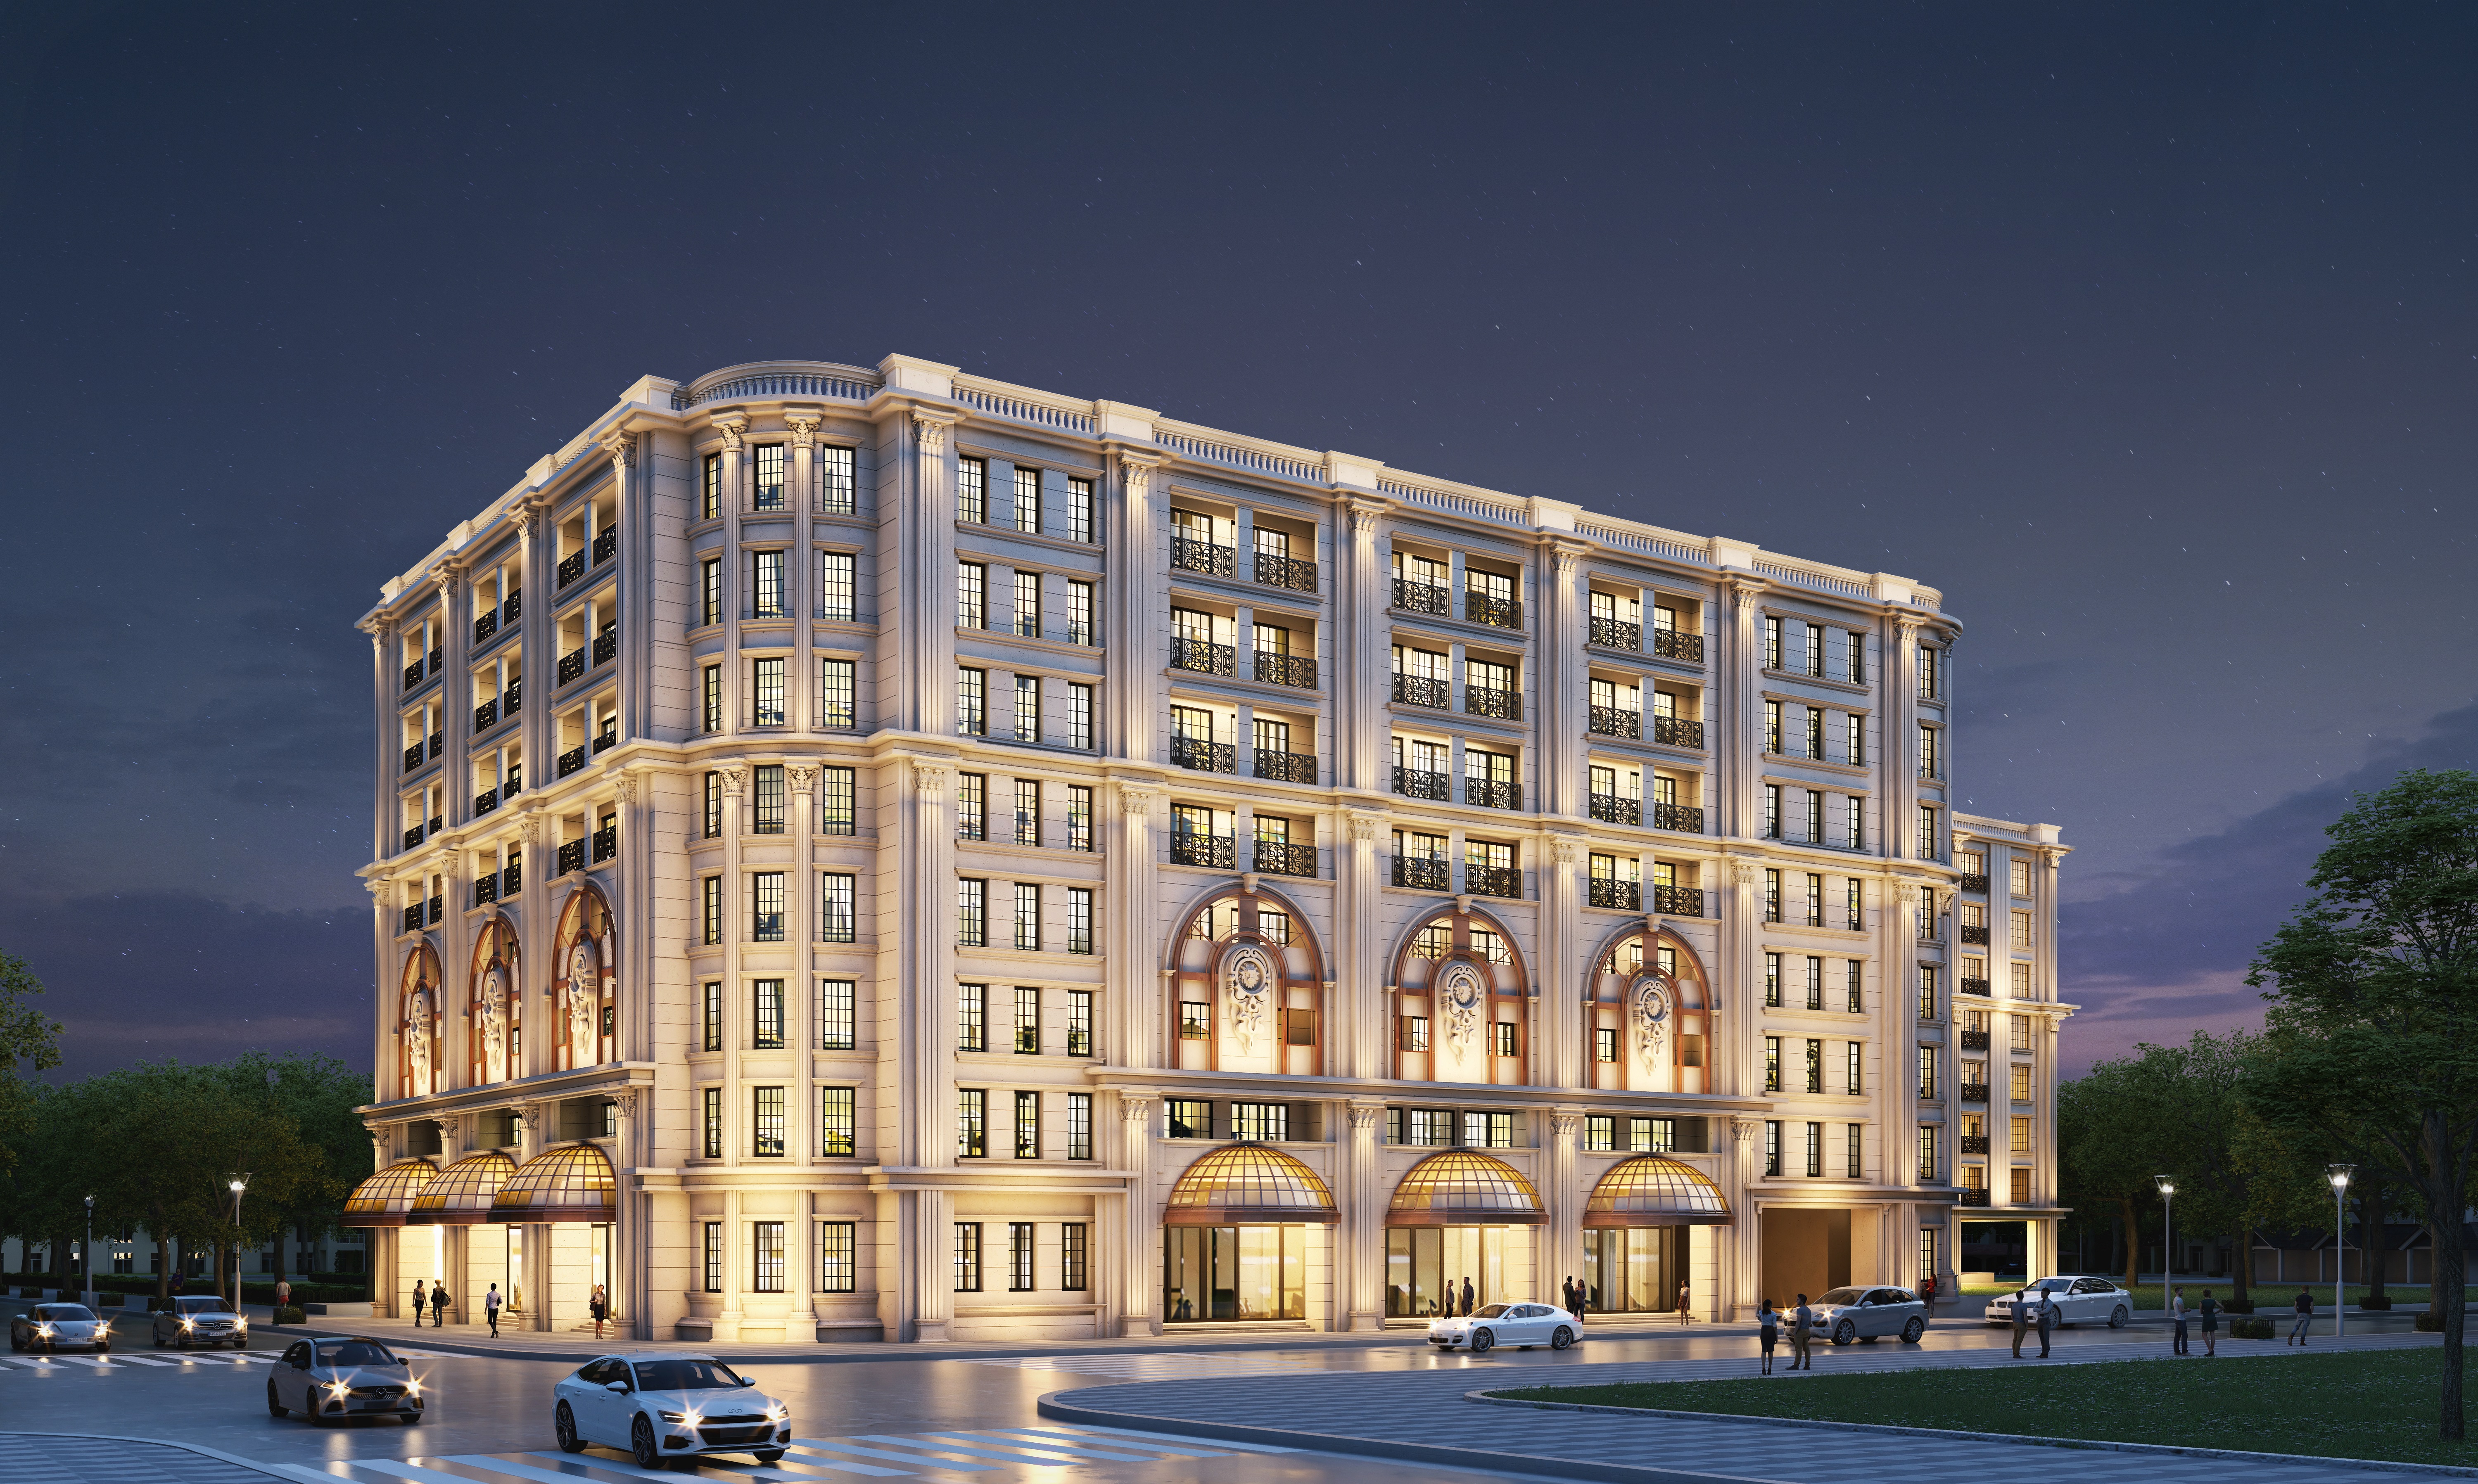 Việt Nam sẽ có khu căn hộ hàng hiệu Ritz-Carlton đầu tiên - Ảnh 2.